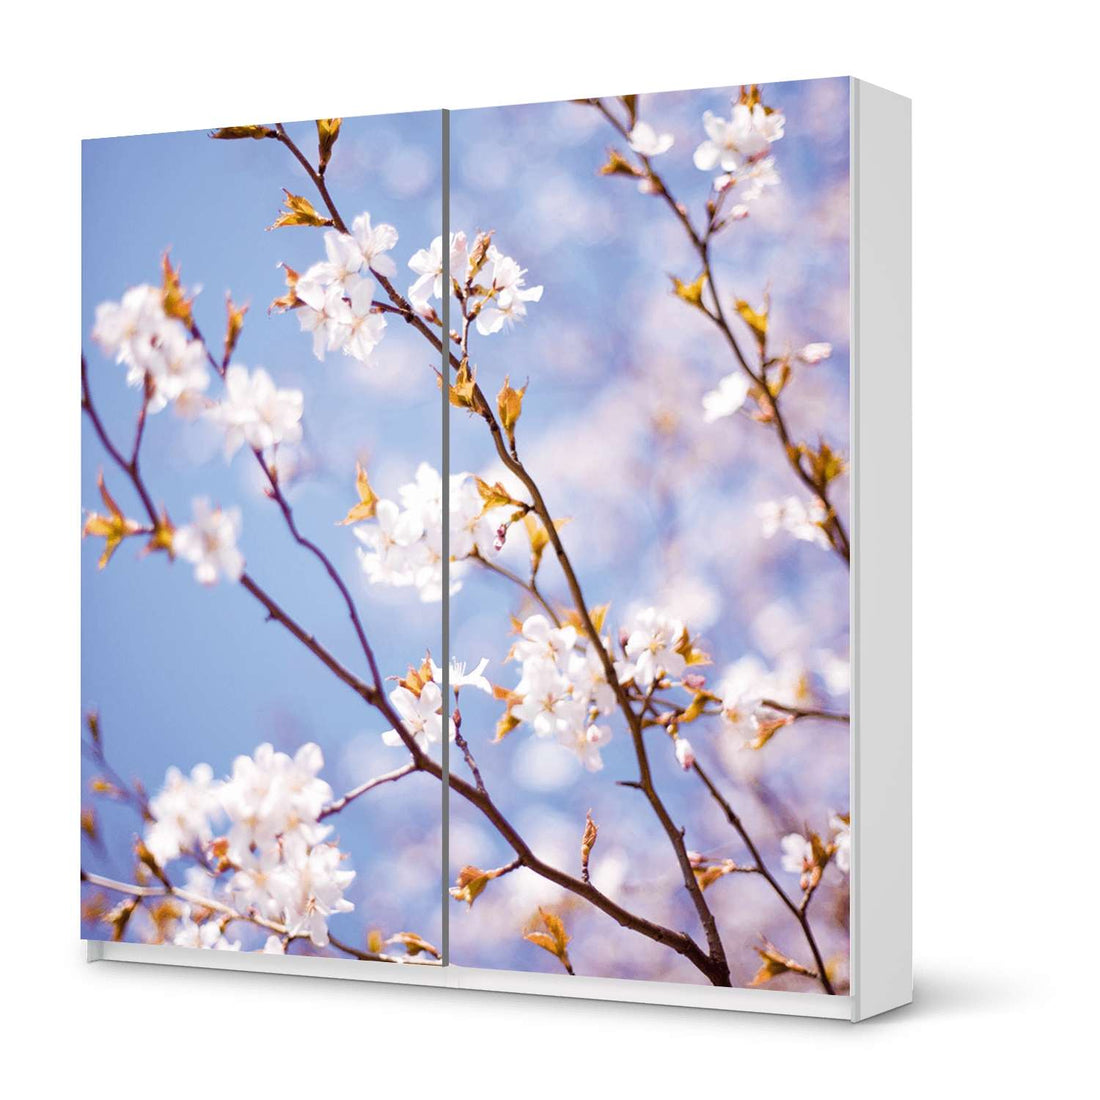 Möbel Klebefolie Apple Blossoms - IKEA Pax Schrank 201 cm Höhe - Schiebetür - weiss